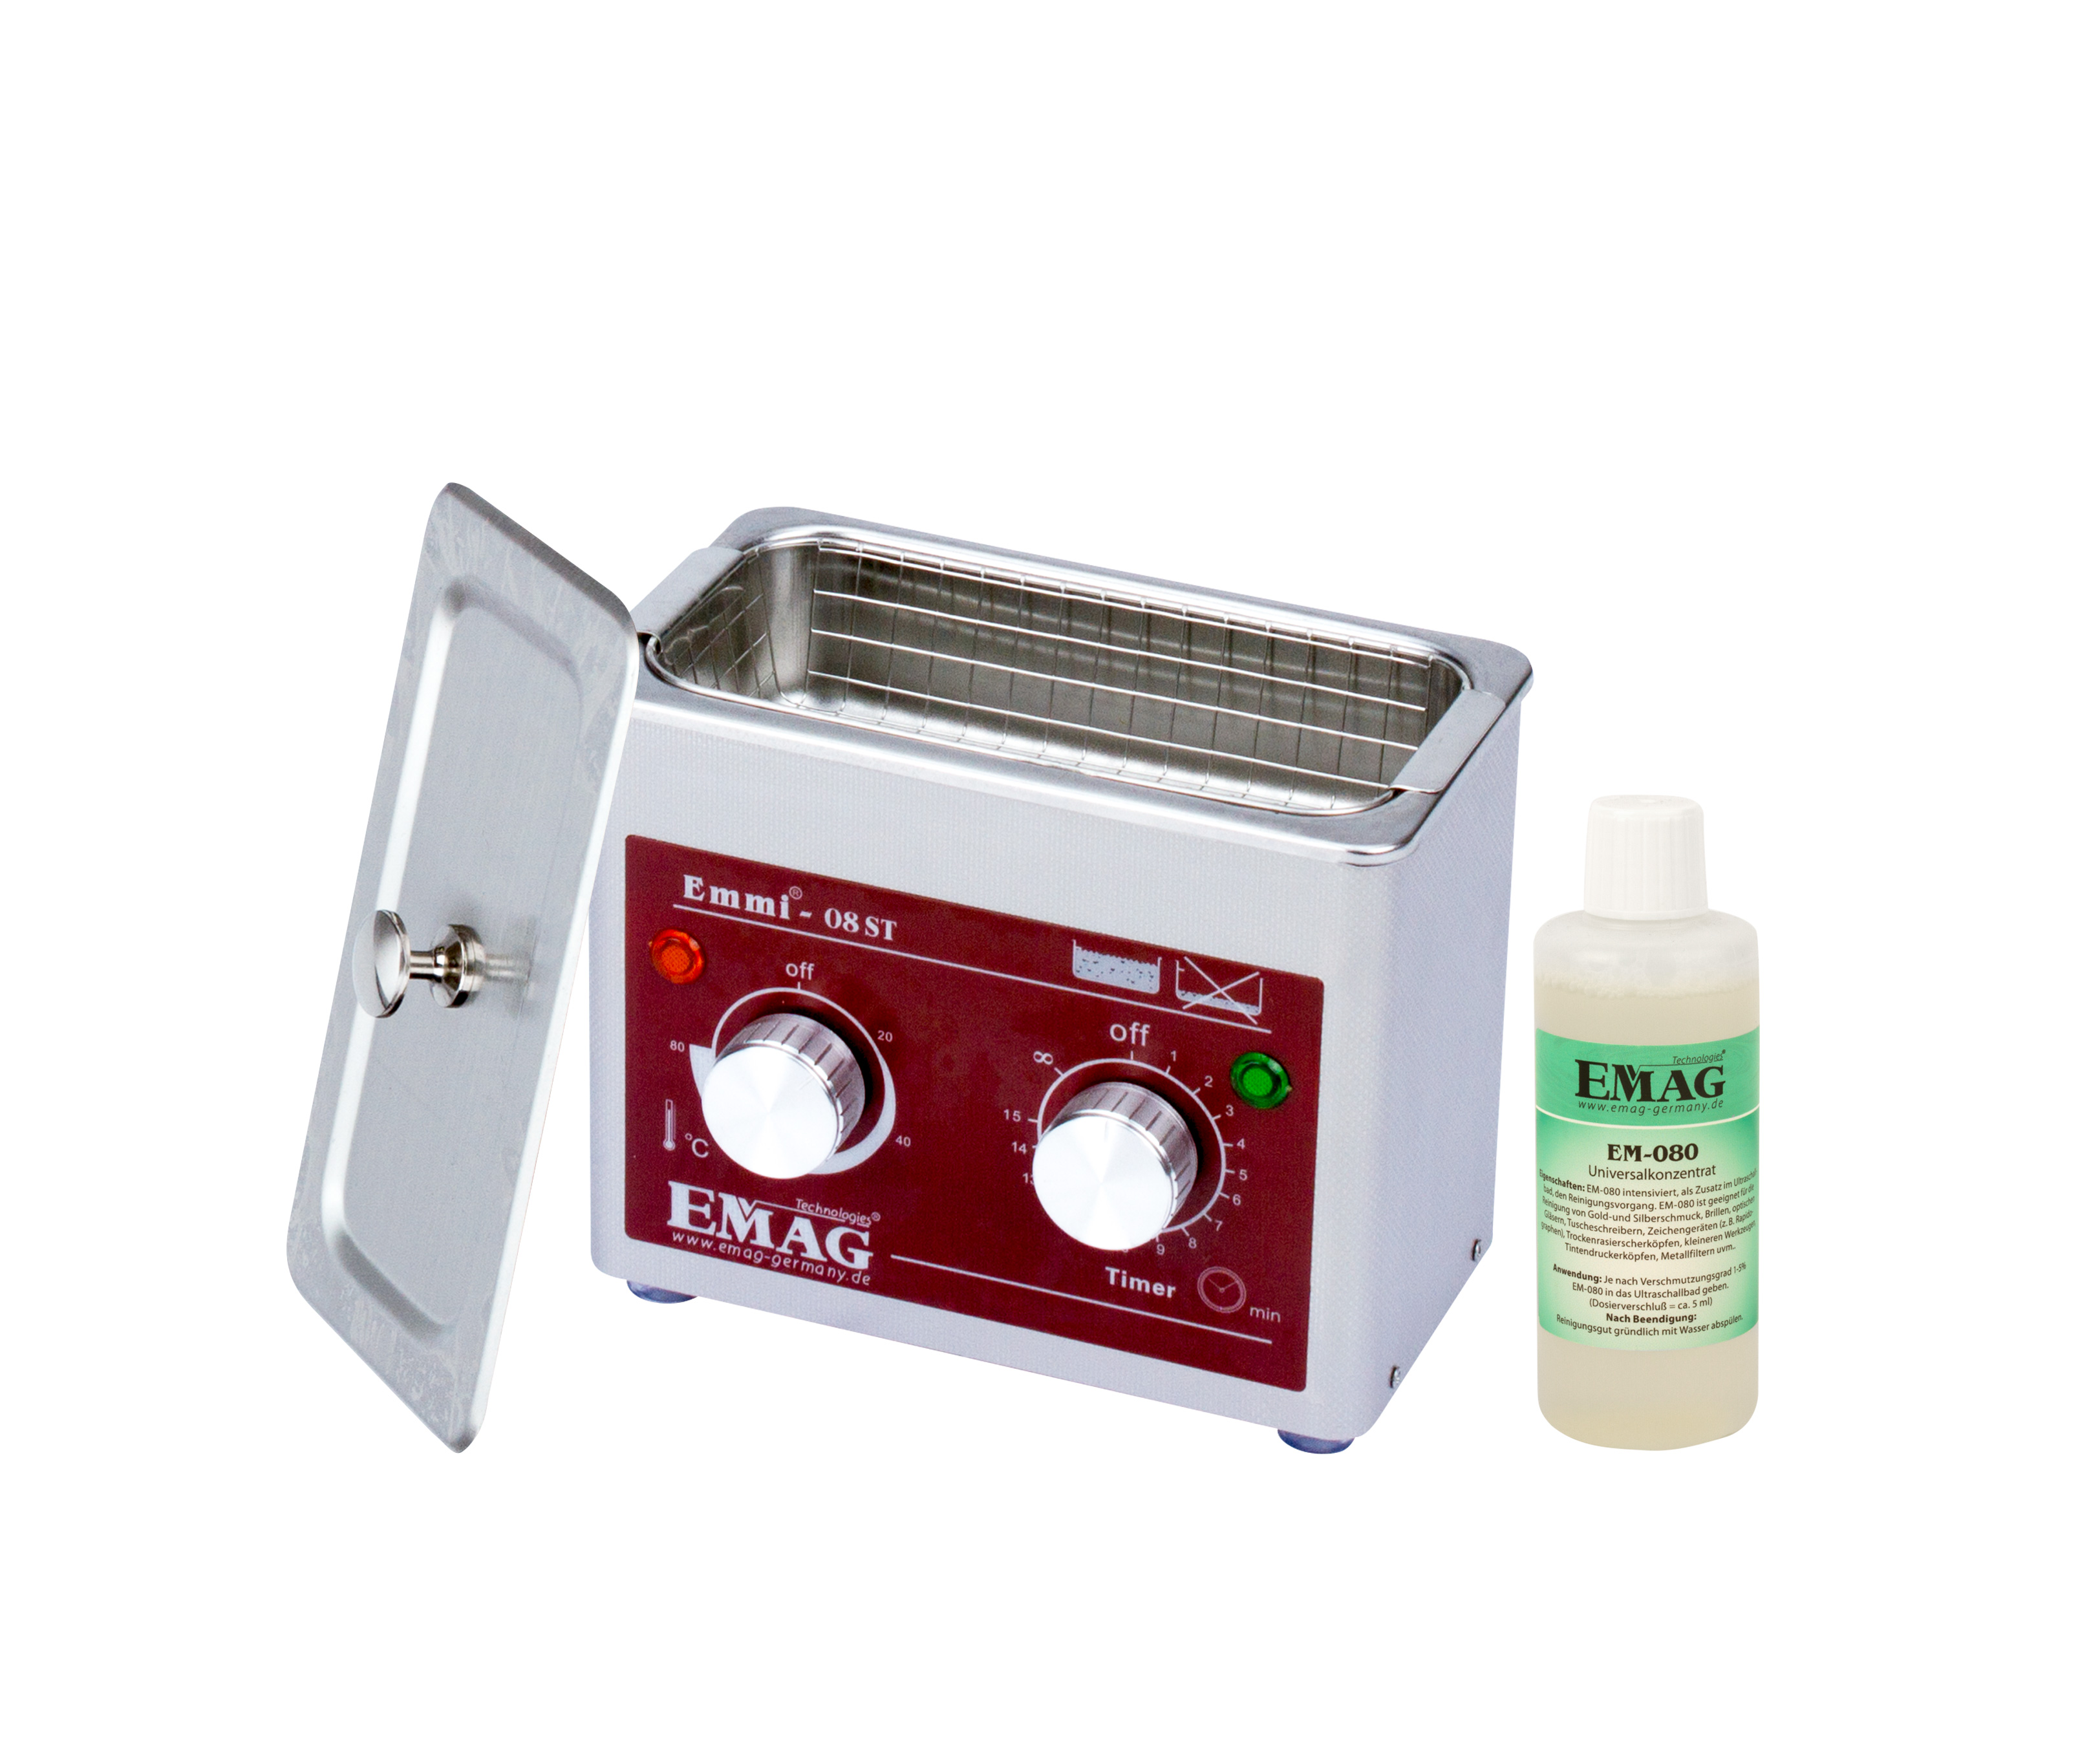 Appareil de nettoyage par ultrasons EMAG Emmi-420 HC avec robinet